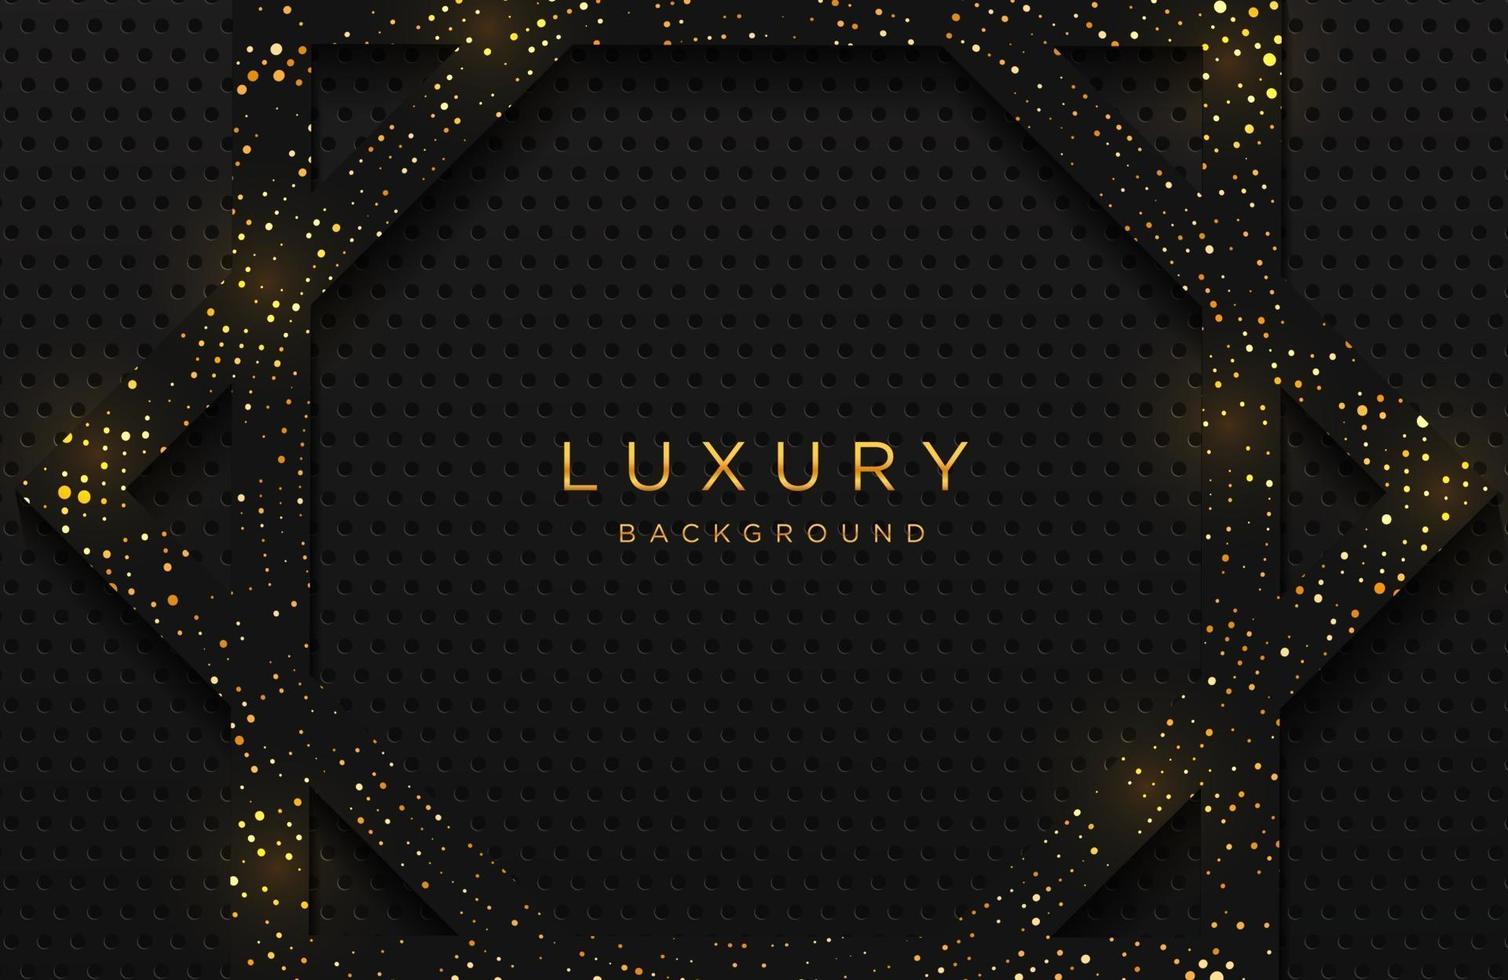 luxe elegante achtergrond met glanzend goud gestippeld patroon geïsoleerd op zwart. abstracte realistische neomorfisme achtergrond. elegante sjabloon vector